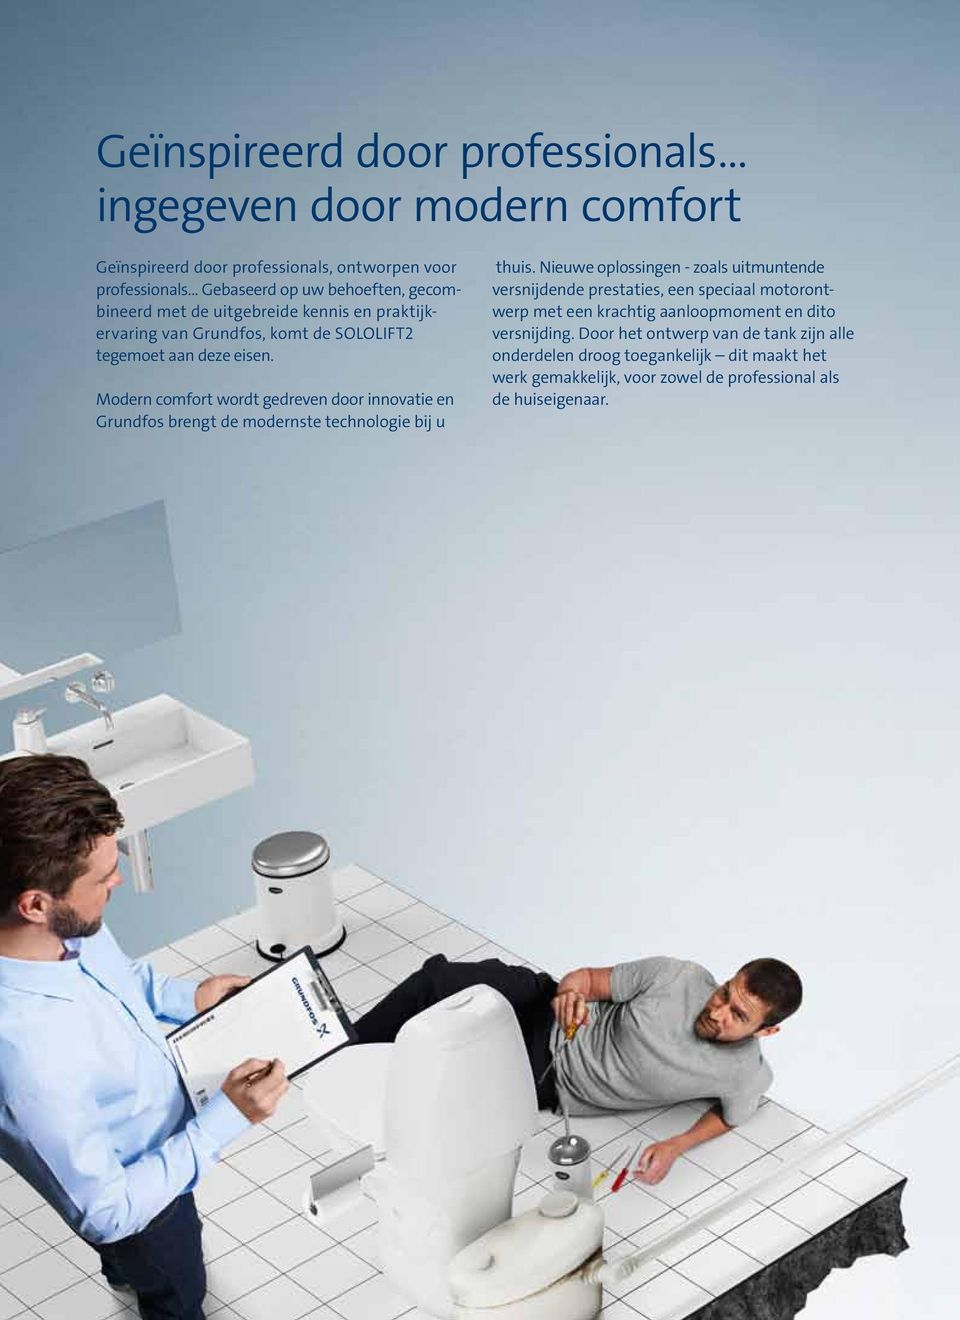 Modern comfort wordt gedreven door innovatie en Grundfos brengt de modernste technologie bij u thuis.